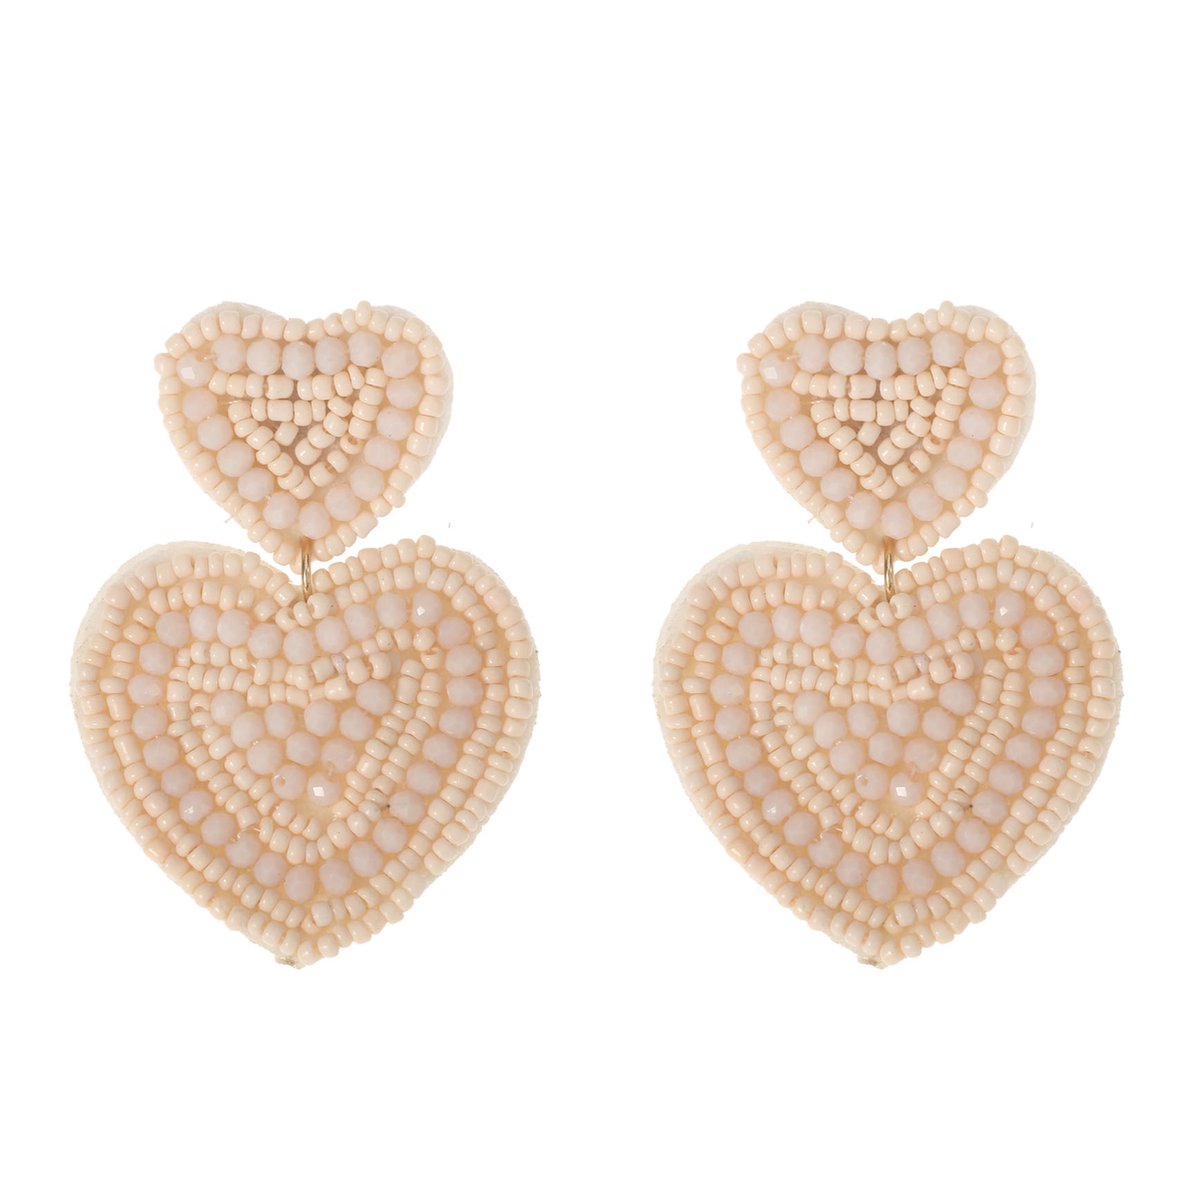 The Jewellery Club - Nove earrings ecru - Oorbellen - Dames oorbellen - Kralen oorbellen - Ecru - 4,5 cm